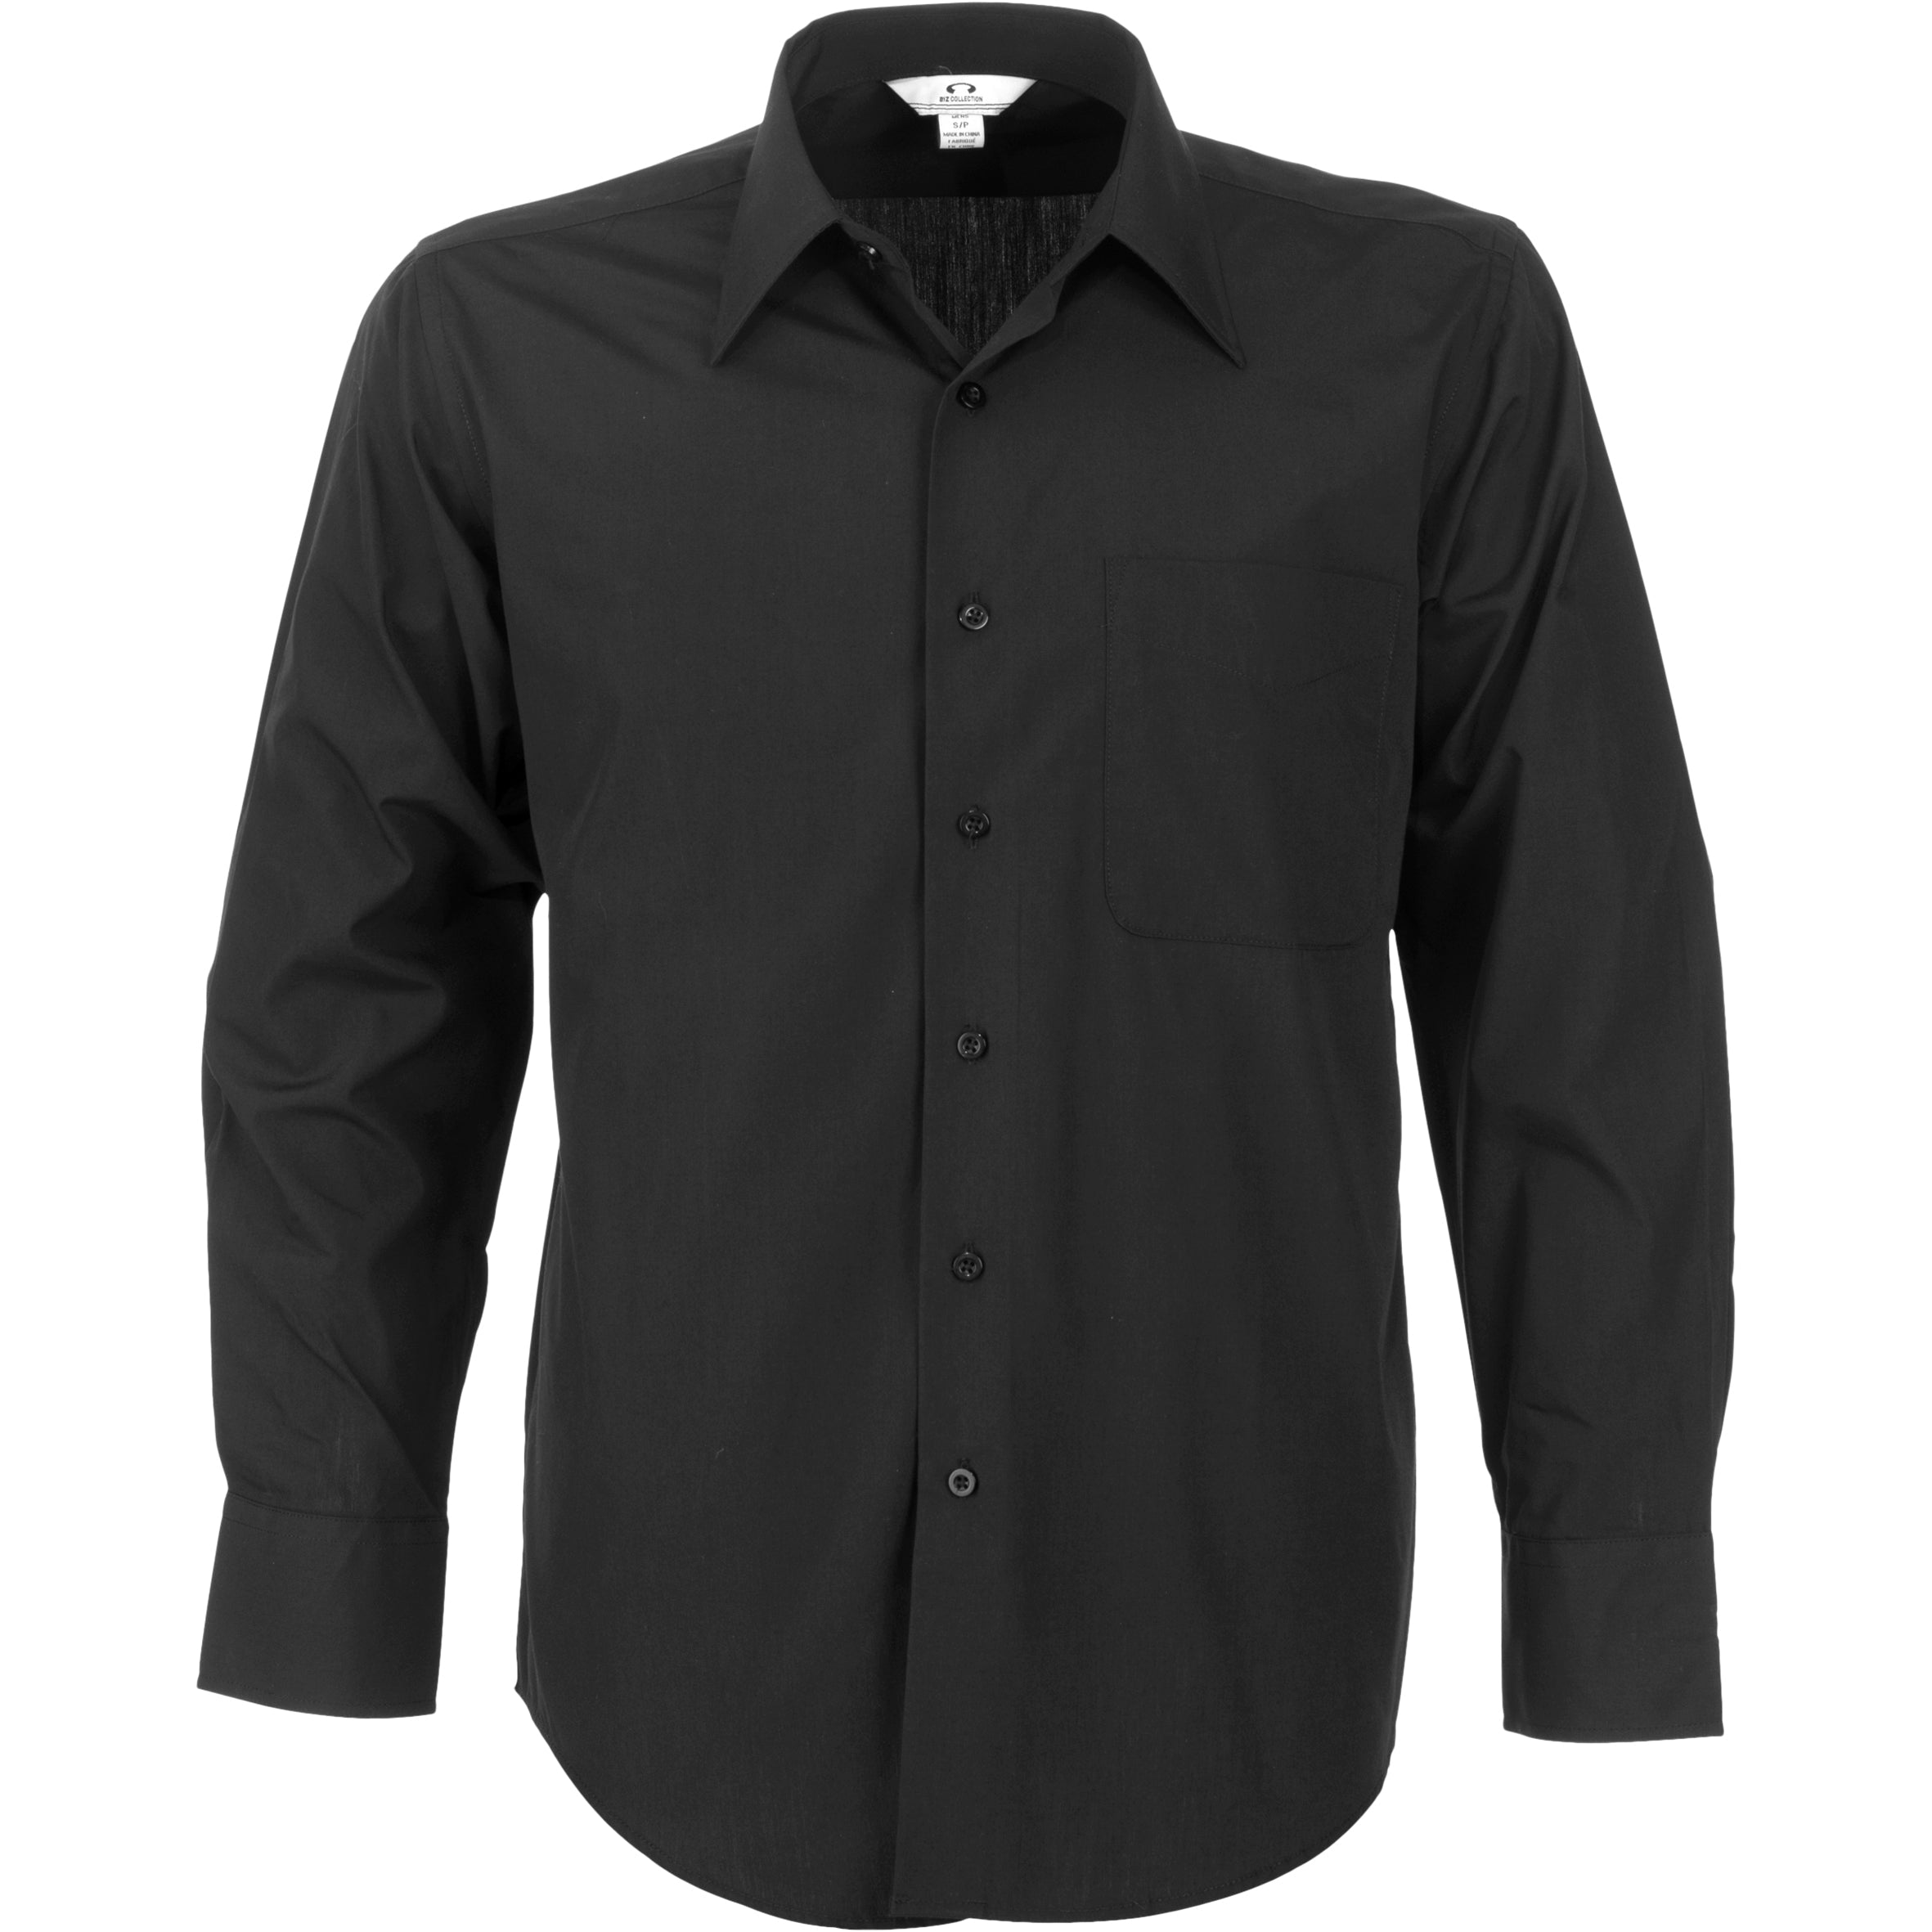 Mens Long Sleeve Metro Shirt - Grey Only-L-Black-BL